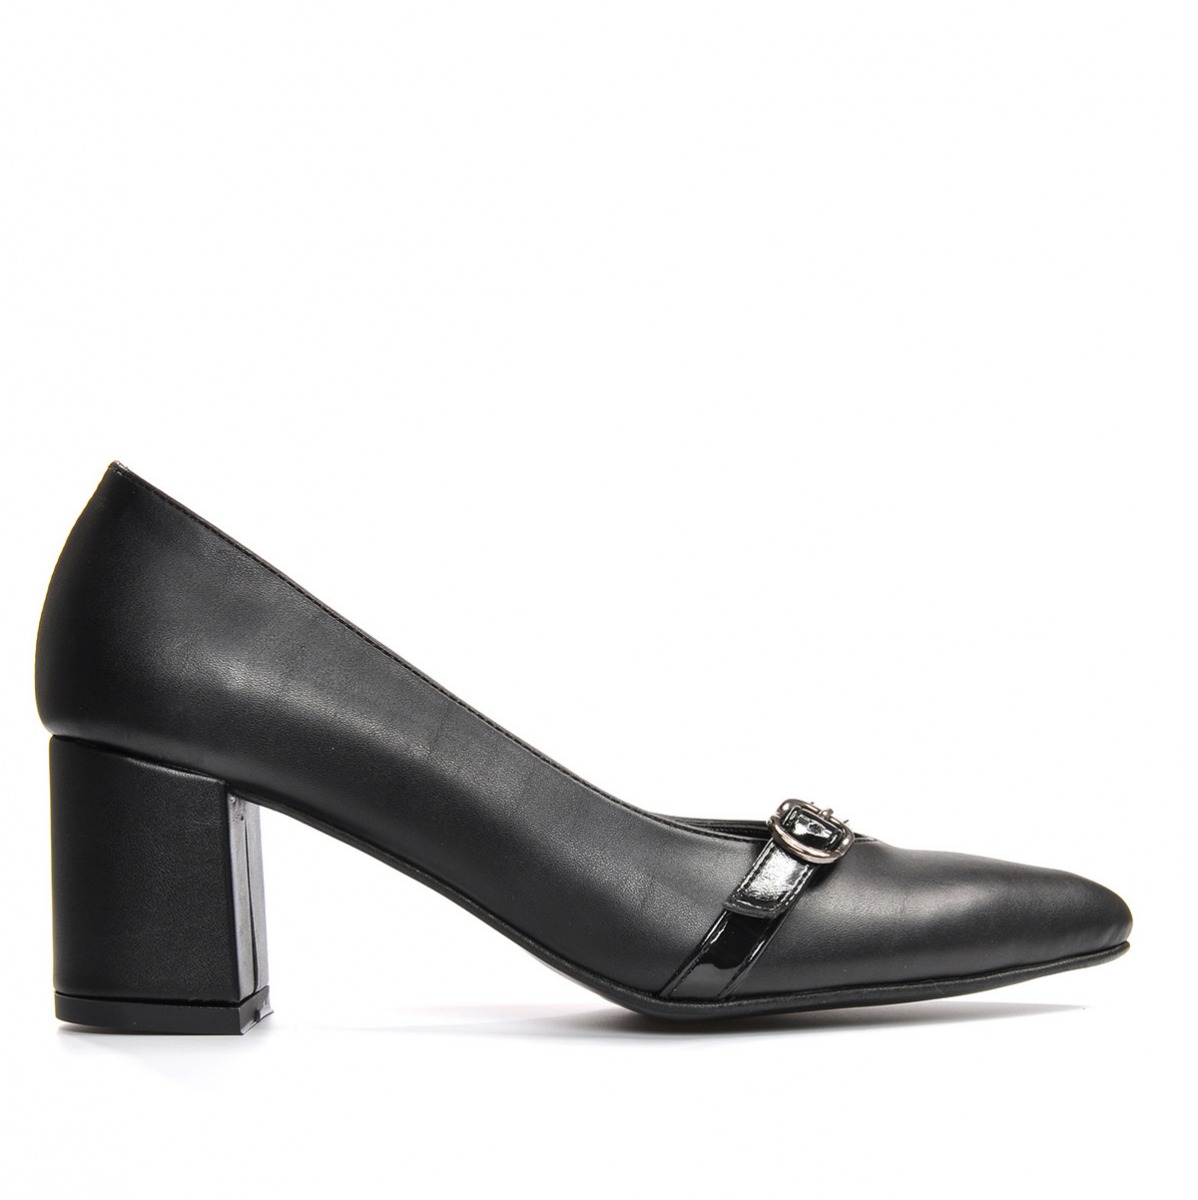 Flo Kadın  Siyah-Cilt Klasik Topuklu Ayakkabı VZN19-110K. 2